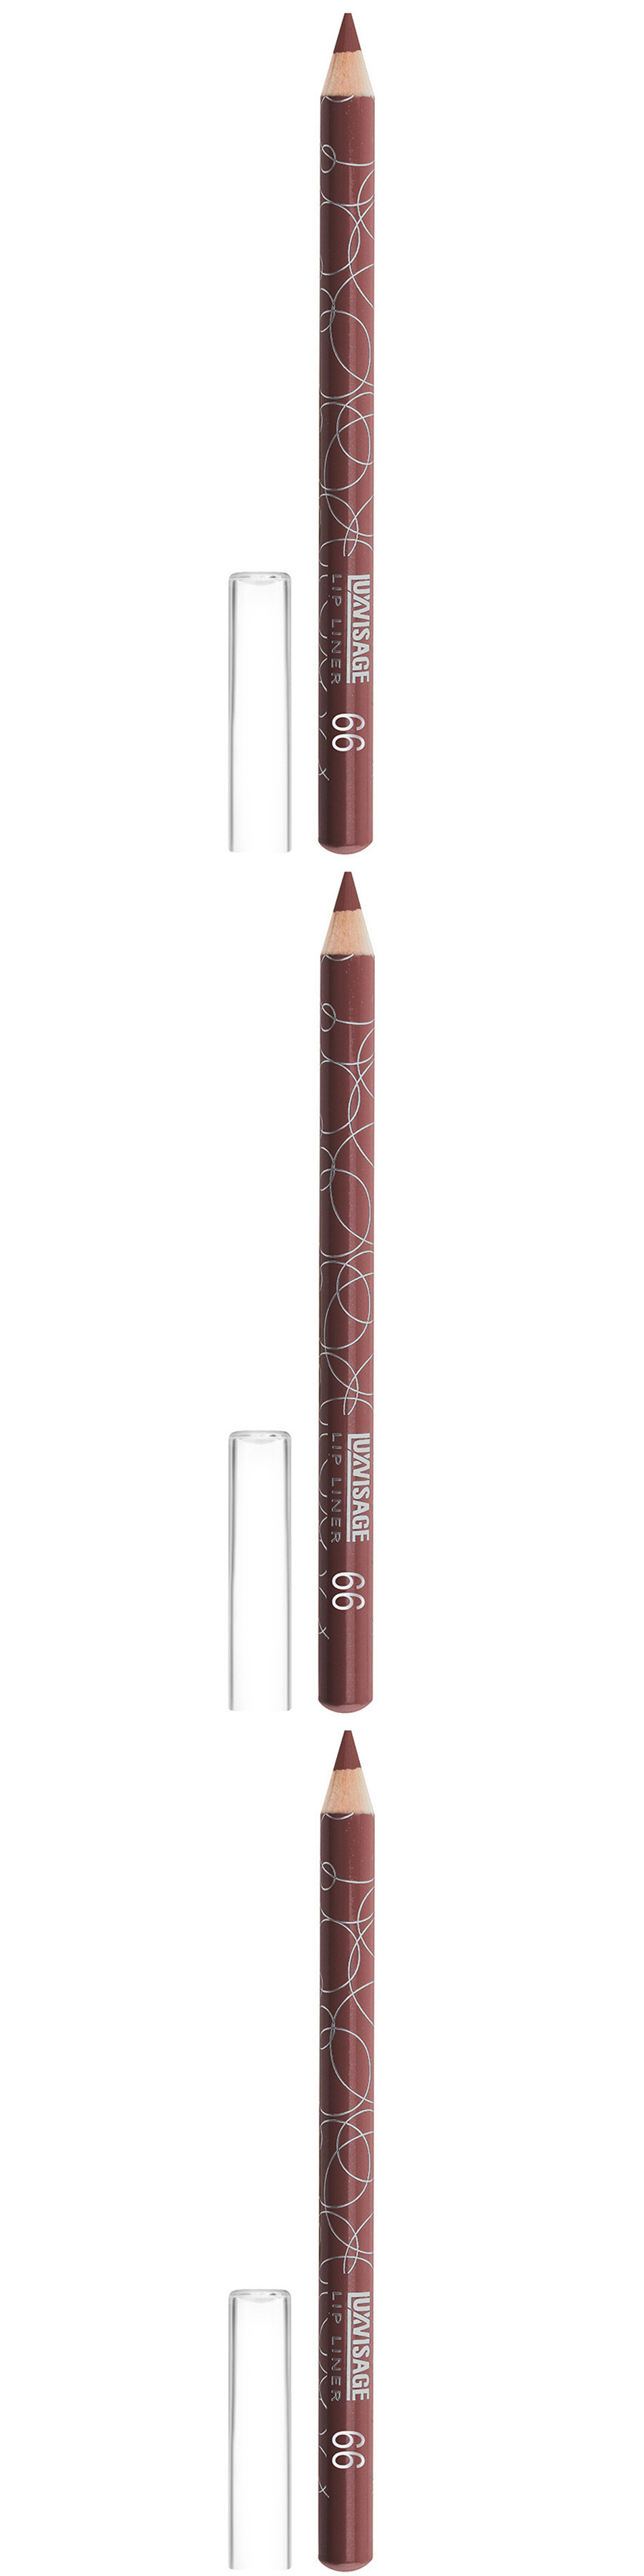 карандаш для губ luxvisage lip liner матовый тон 53 светло коричневый 1 75 г Карандаш для губ Luxvisage, тон 66, лилово-коричневый, 3 шт